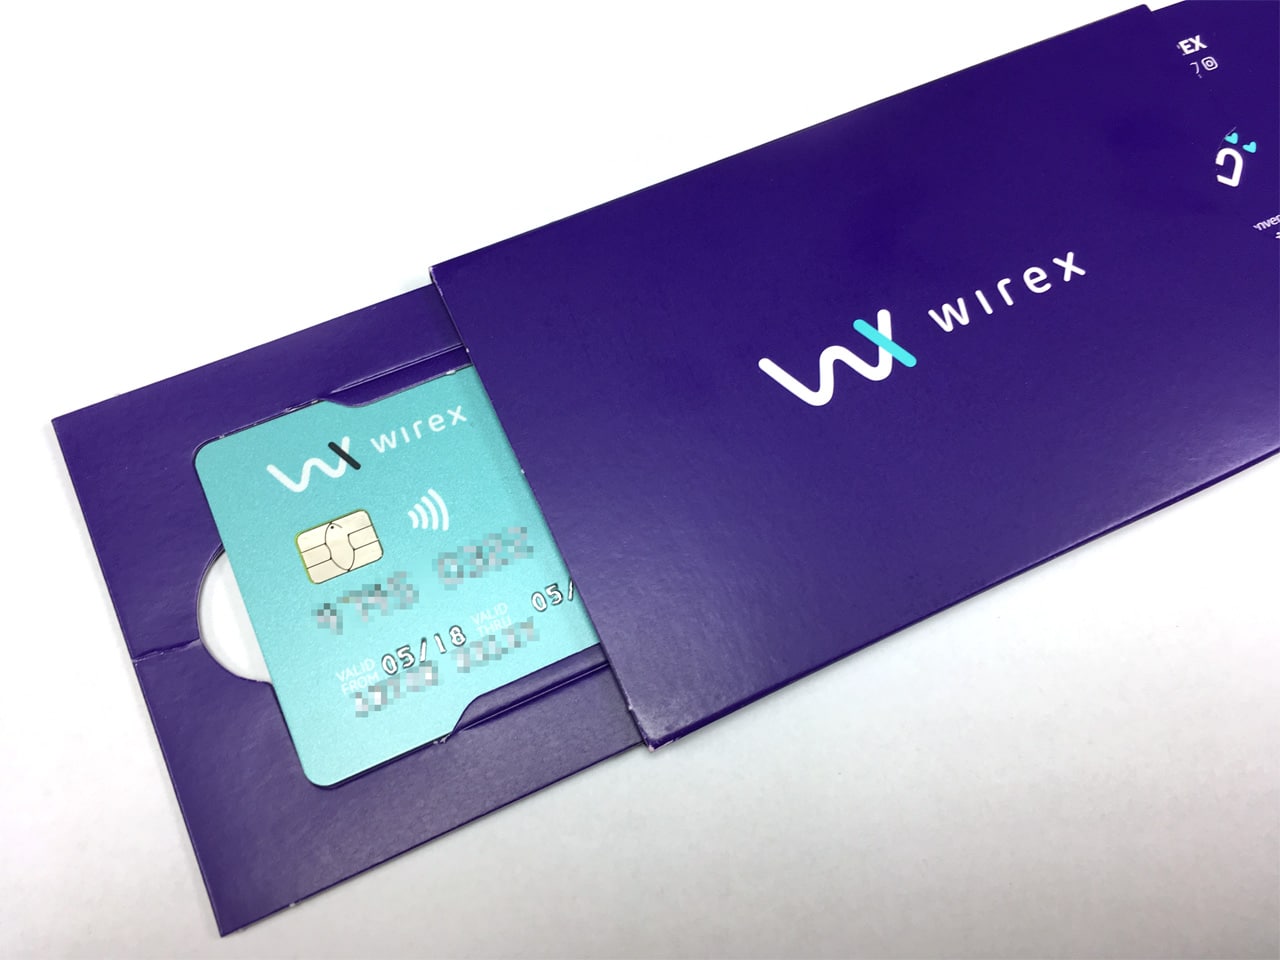 wirex recieves e-money license